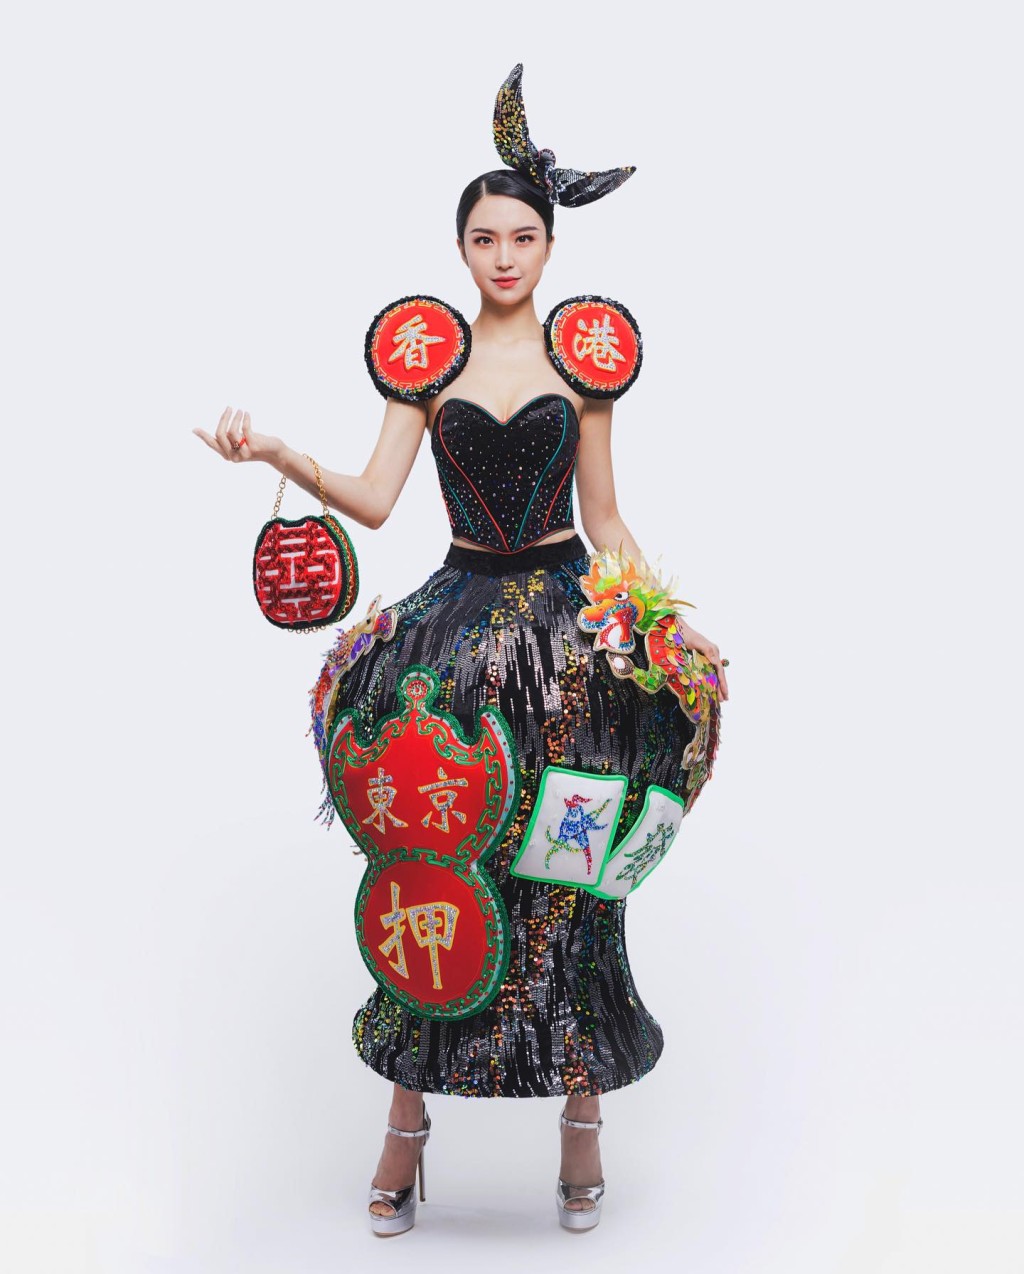 梁庭欣代表香港的民族服裝引起網民熱議。